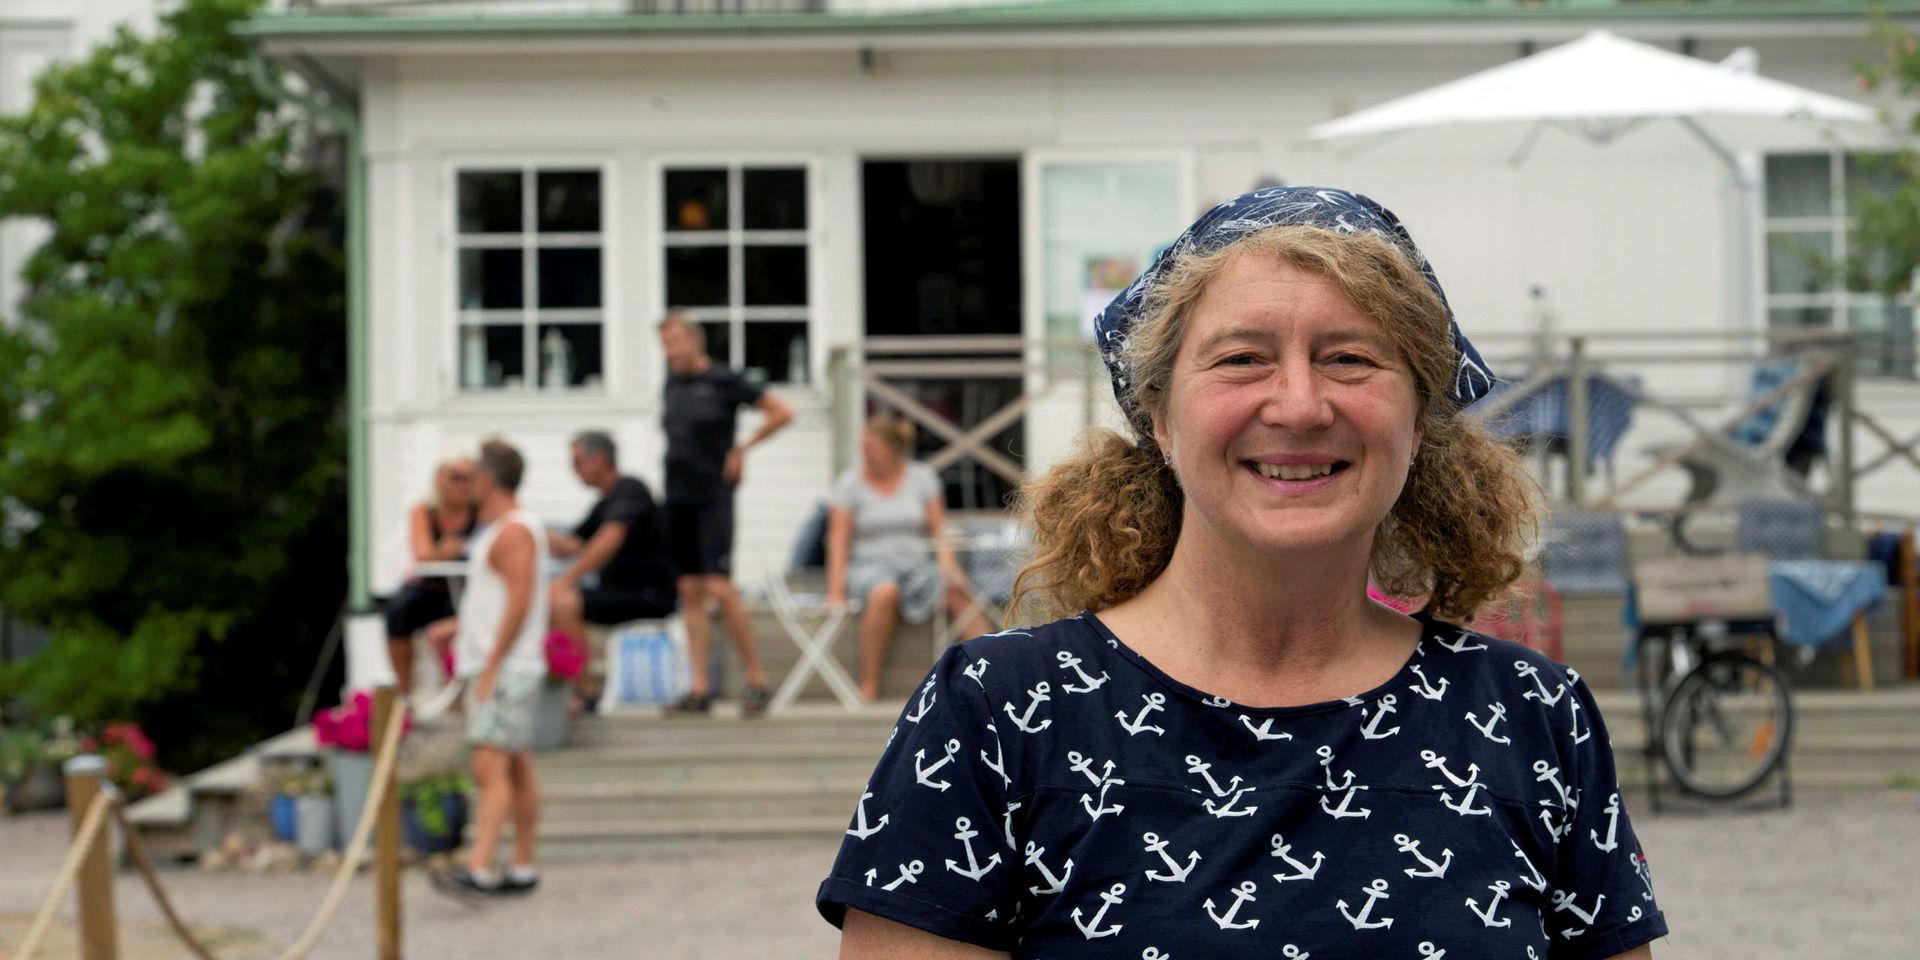 Catarina Arvidsson bedömer att cirka 15-20 procent av gästerna som bor över på Steninge kuststation kommer från utlandet. Och av dem är det många som cyklar Kattegattleden. I år verkar dock de utländska turisterna bli få. ”Nästan alla de som inte kommer från Sverige har bokat av,” säger Catarina. 